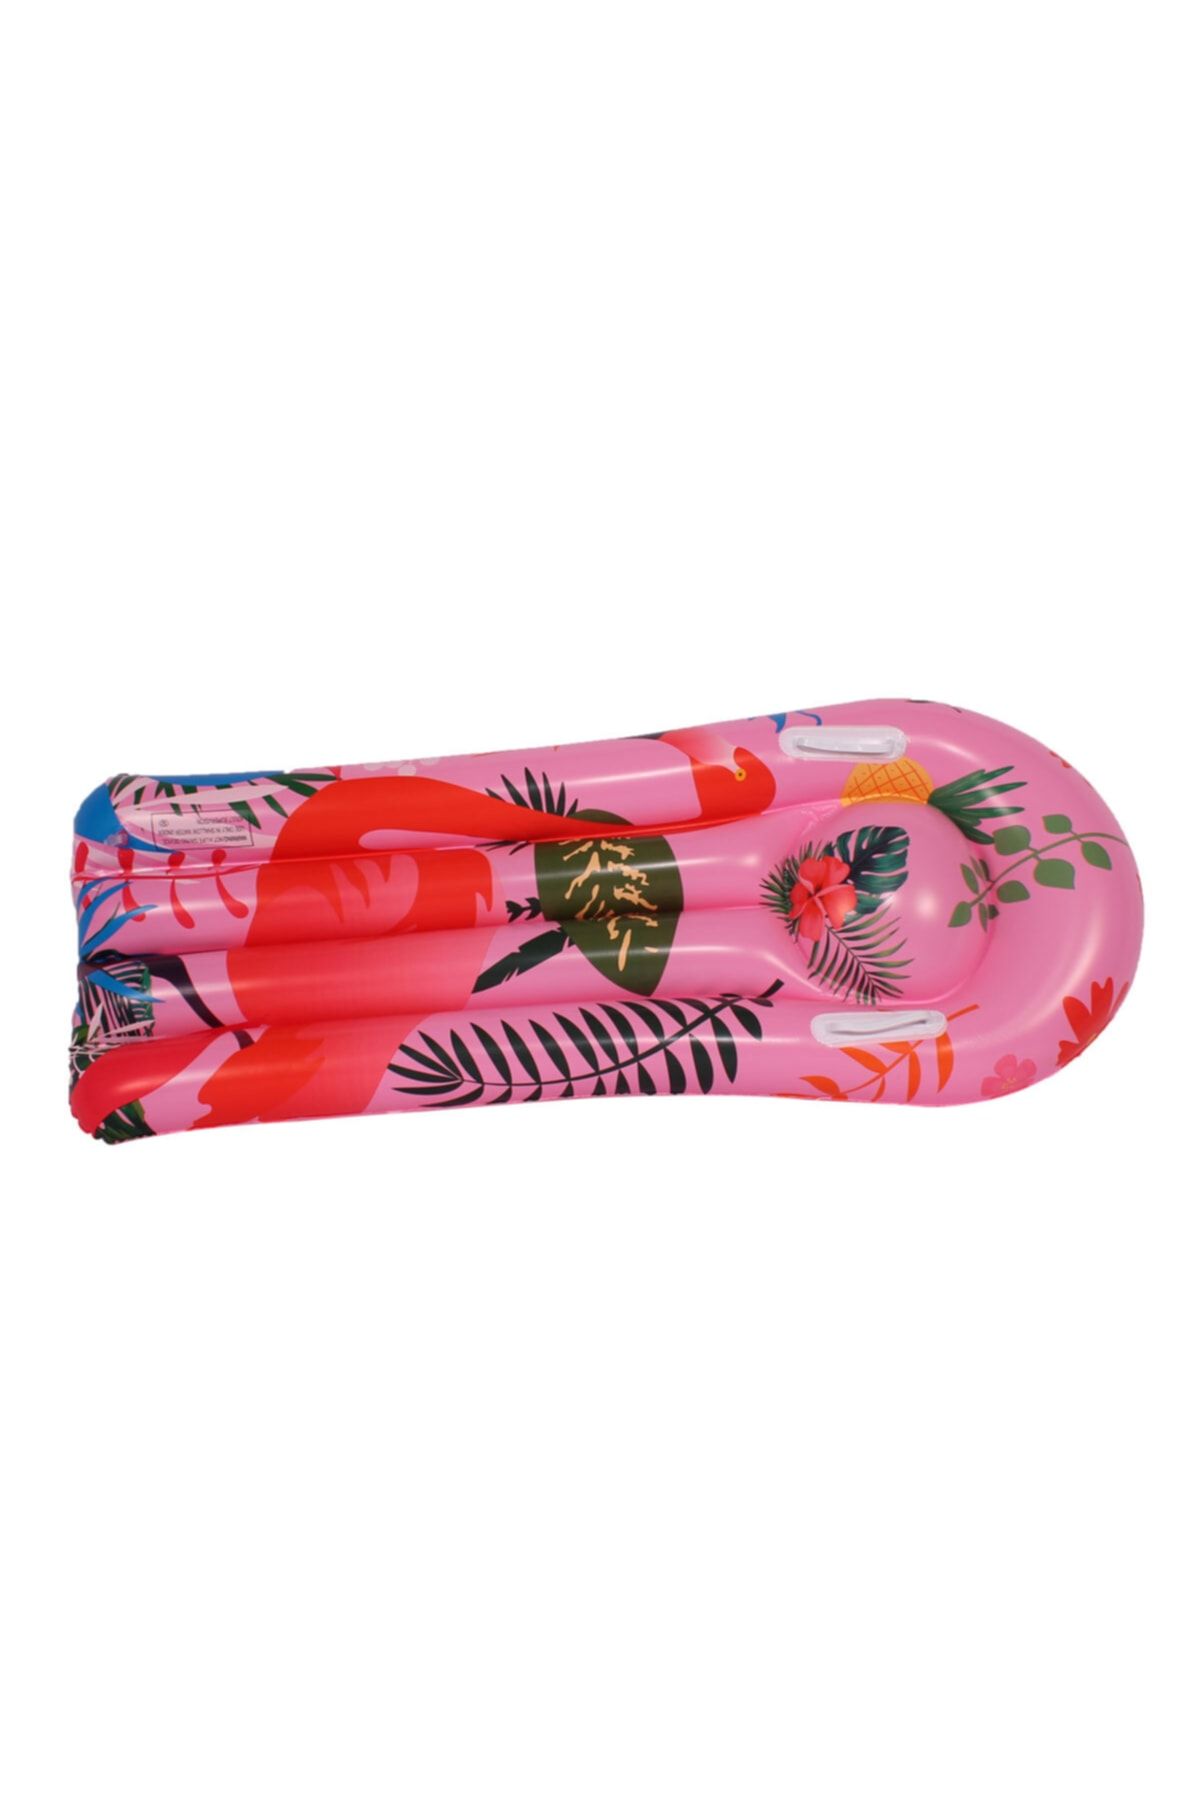 buradanaldım Pembe Renk, Çocuk Deniz, Havuz Surf Yatağı 110x45 Cm Flamingo Desenli